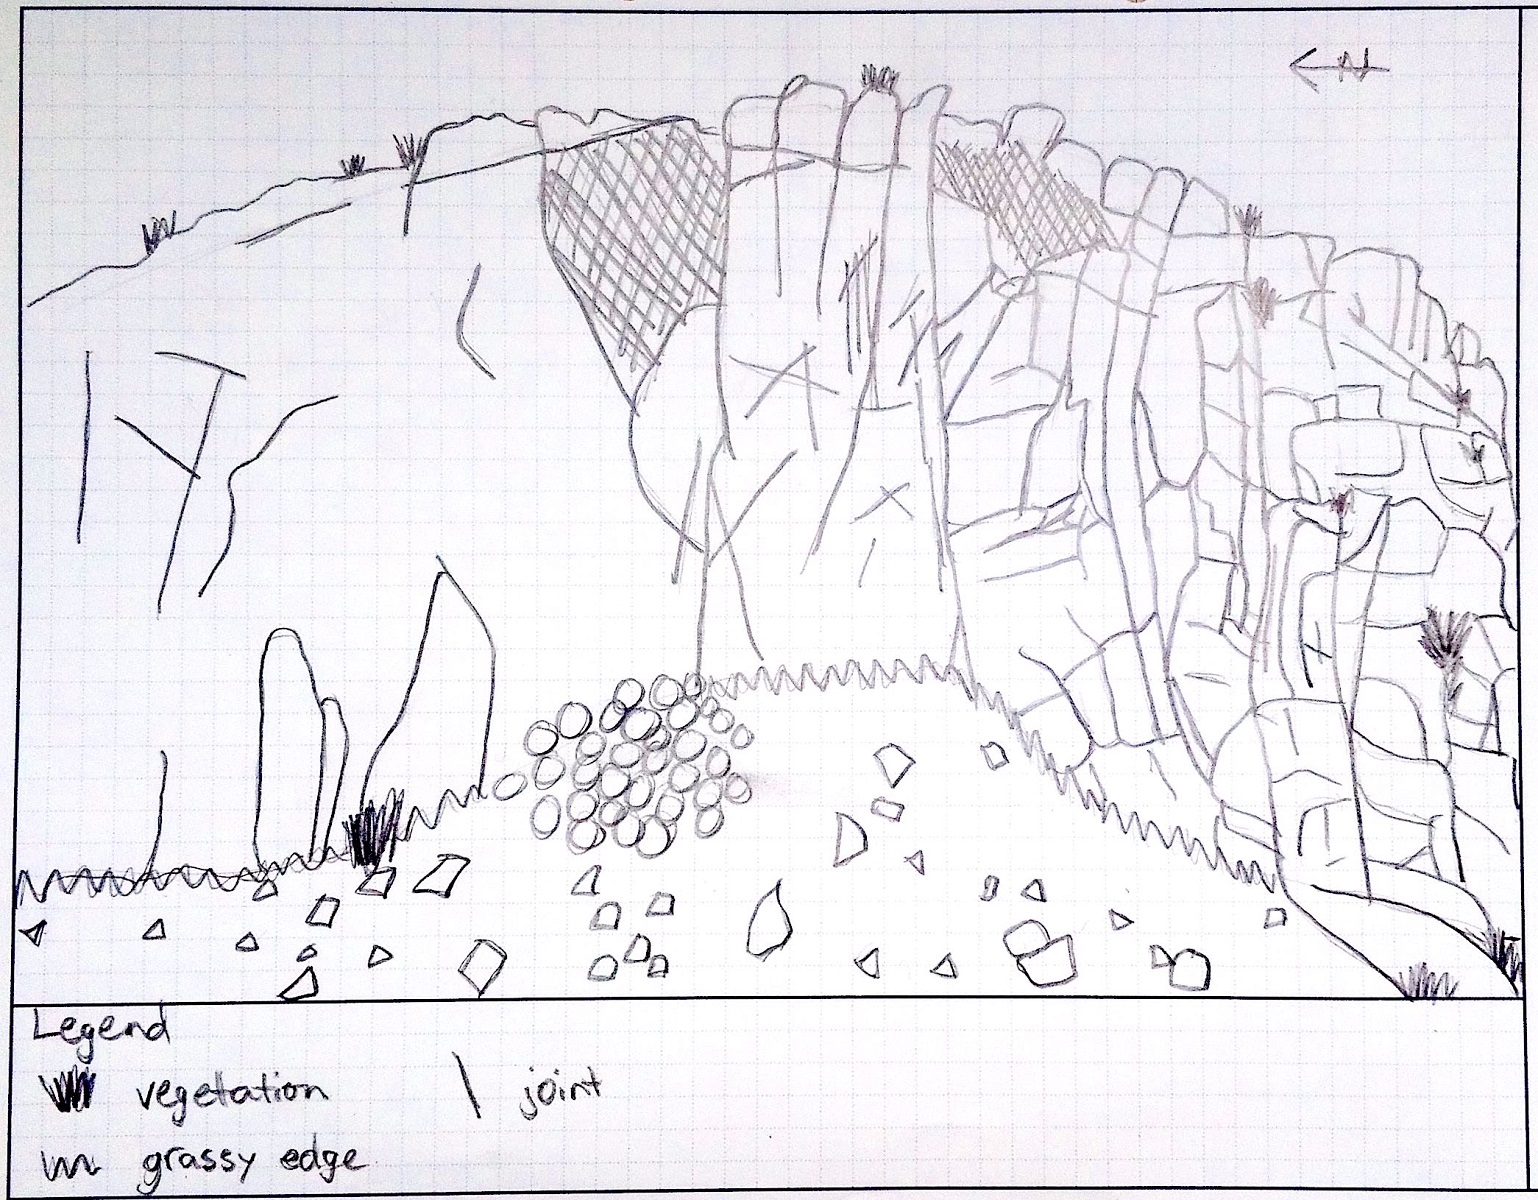 A photo of an outcrop sketch